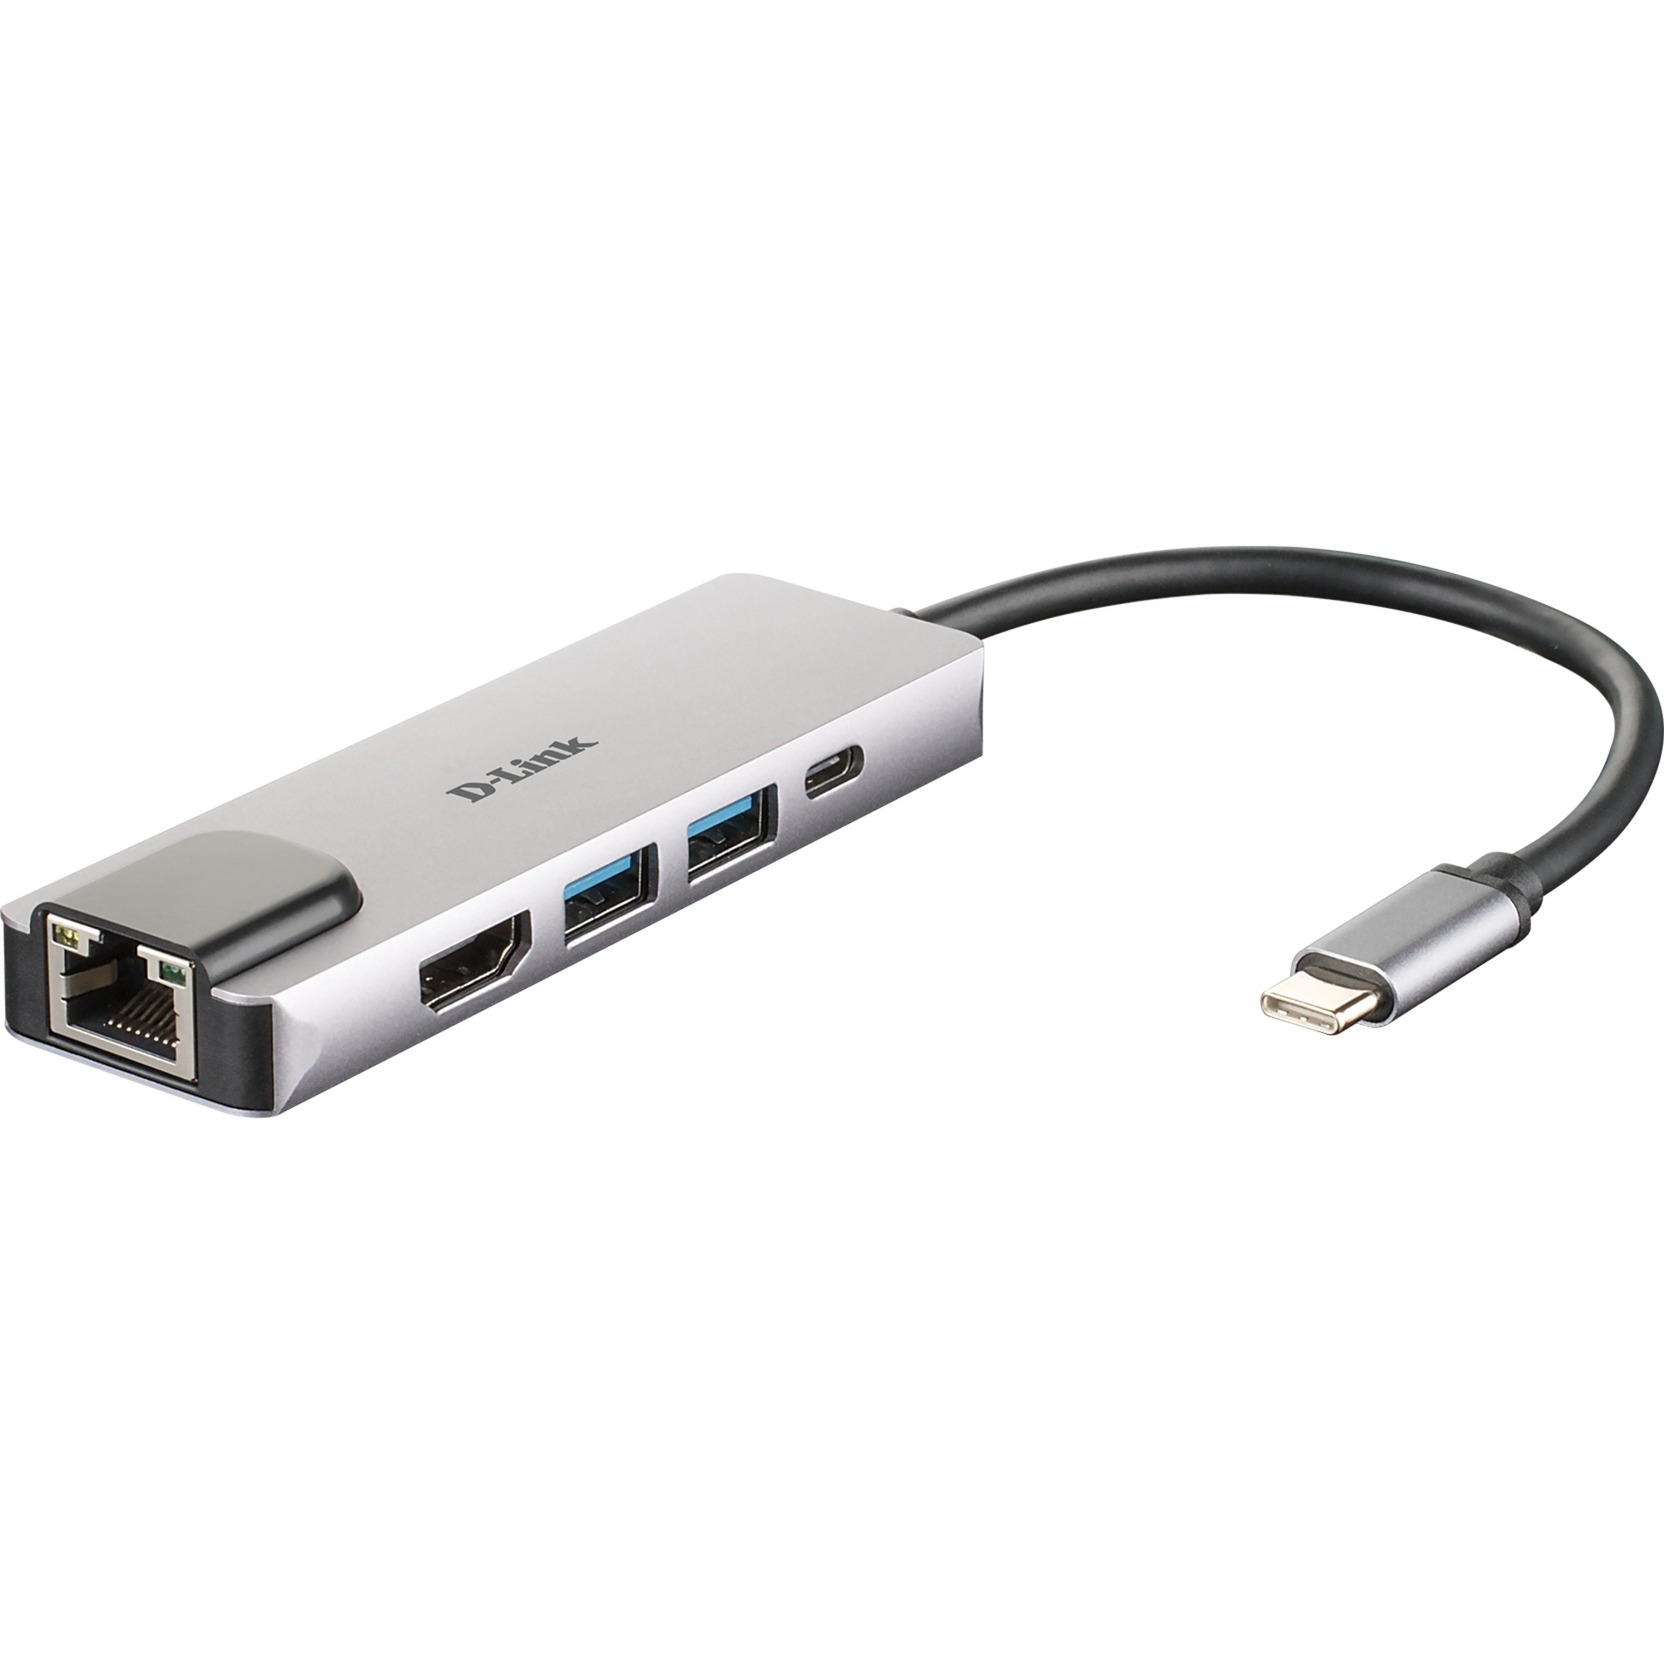 Image of Alternate - DUB-M520 USB-C Hub mit Ethernet und Powerdelivery, USB-Hub online einkaufen bei Alternate